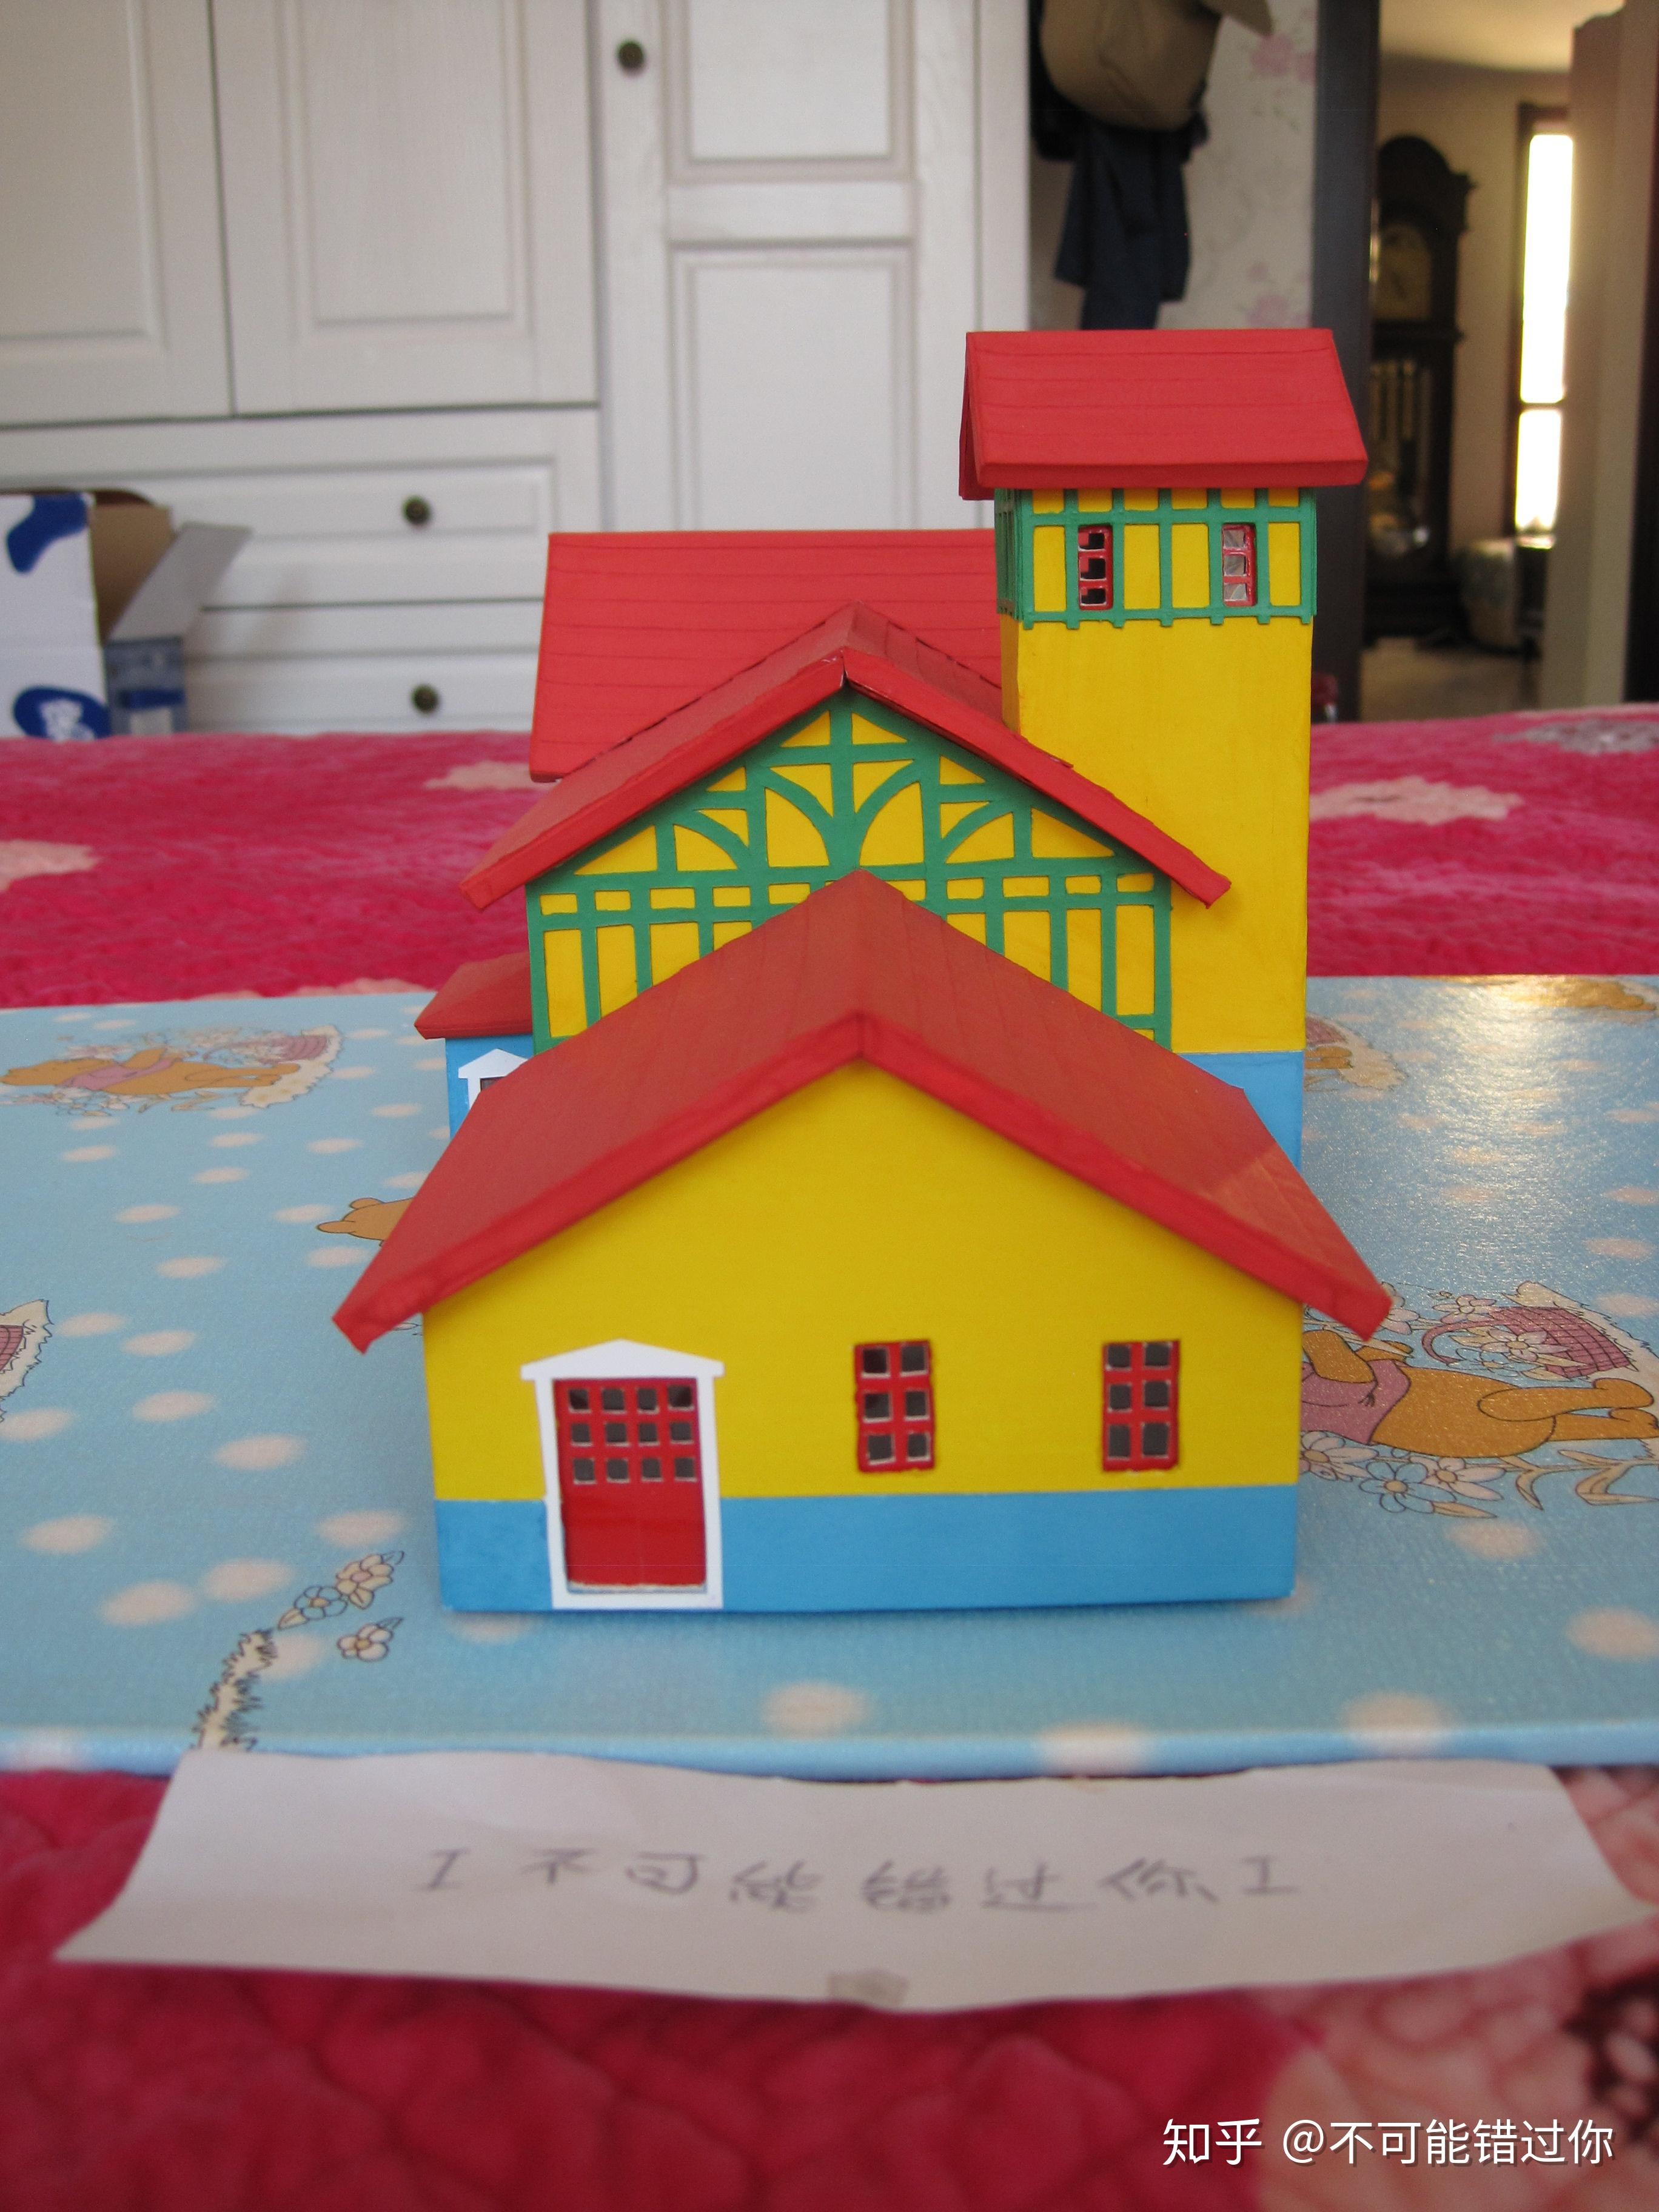 如何用废纸盒做出小房子模型很精致那种